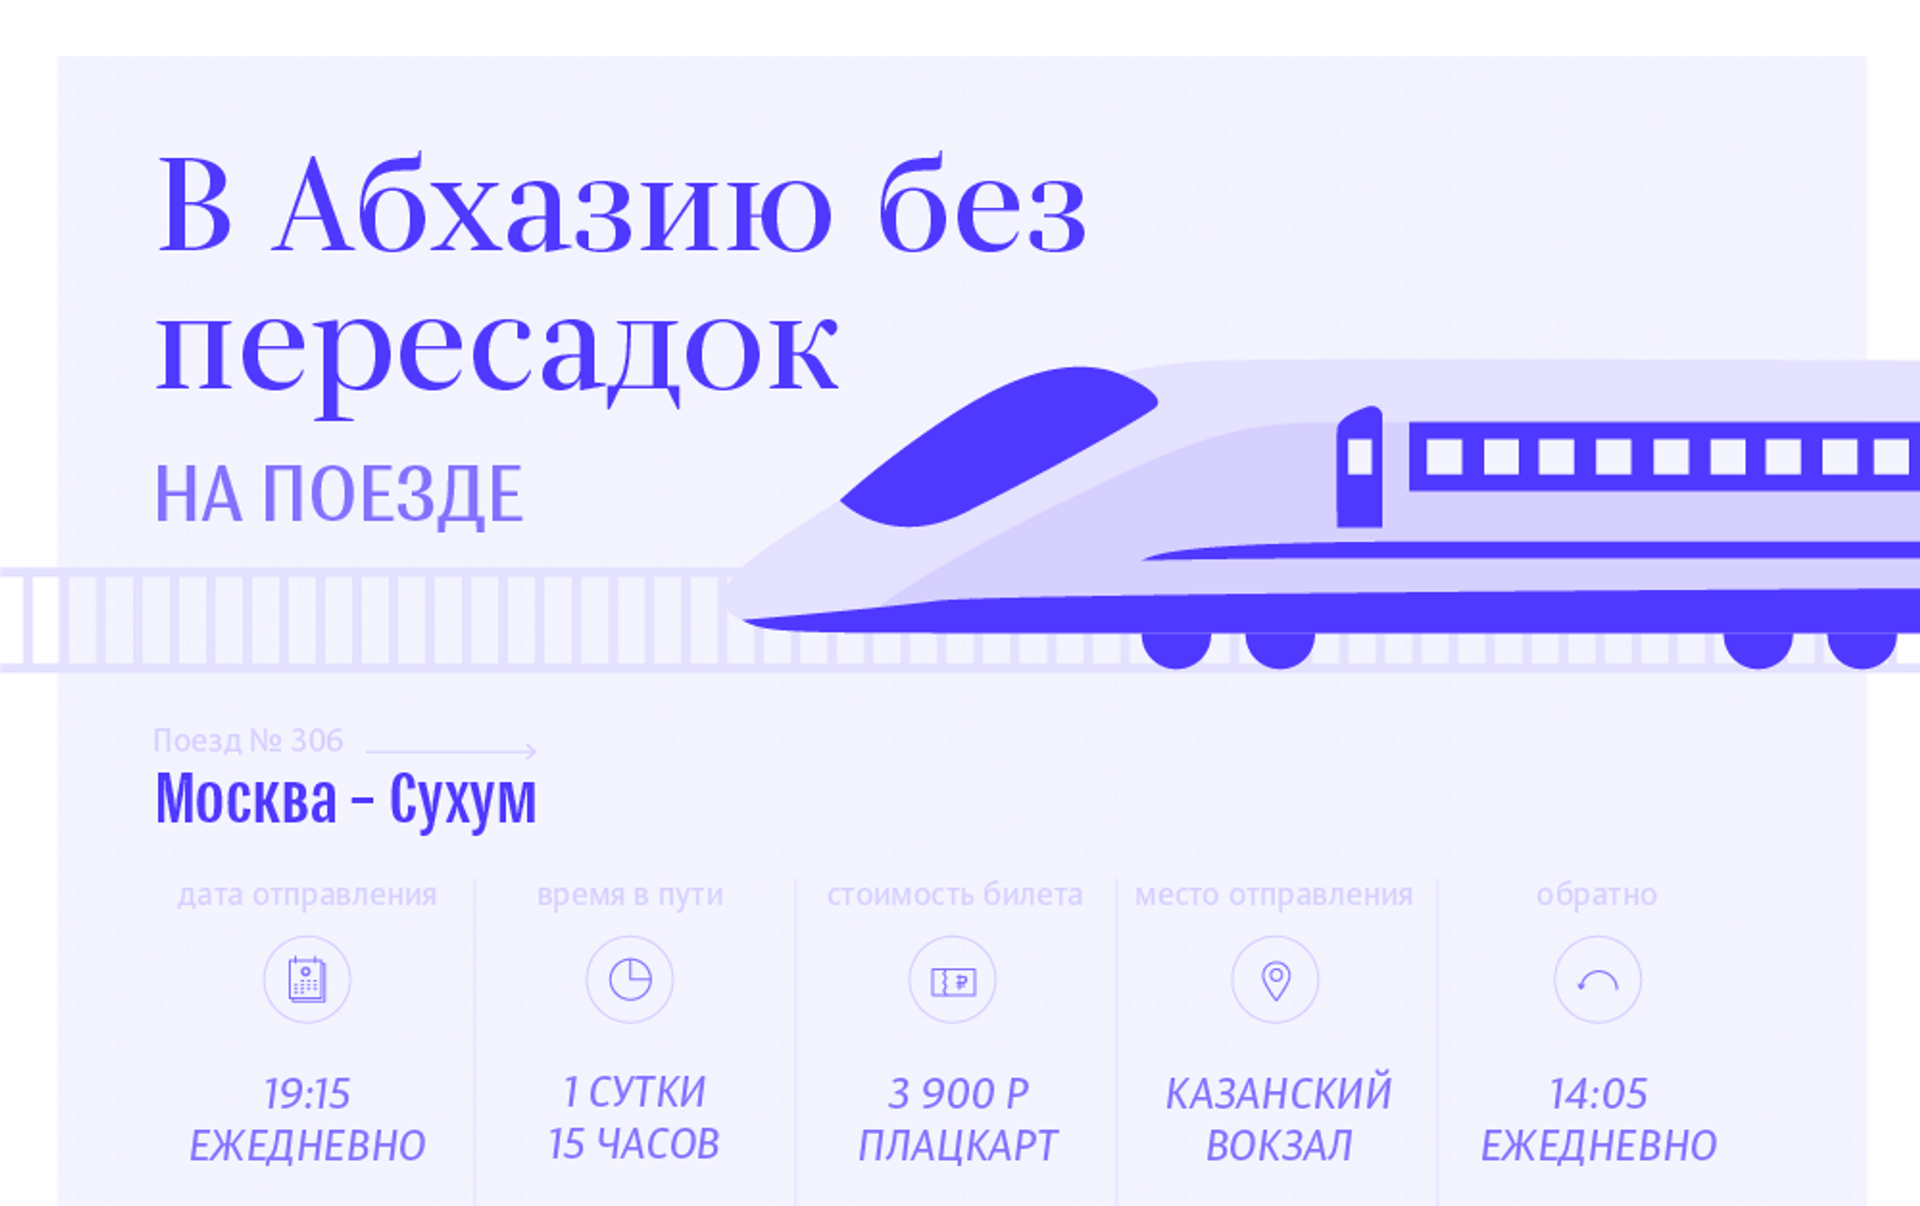 Поезд дешево купить без пересадки. Билеты в Абхазию на поезде. Абхазия билеты на самолет из Москвы. Билет на самолет до Абхазии. Абхазия билеты на самолет.